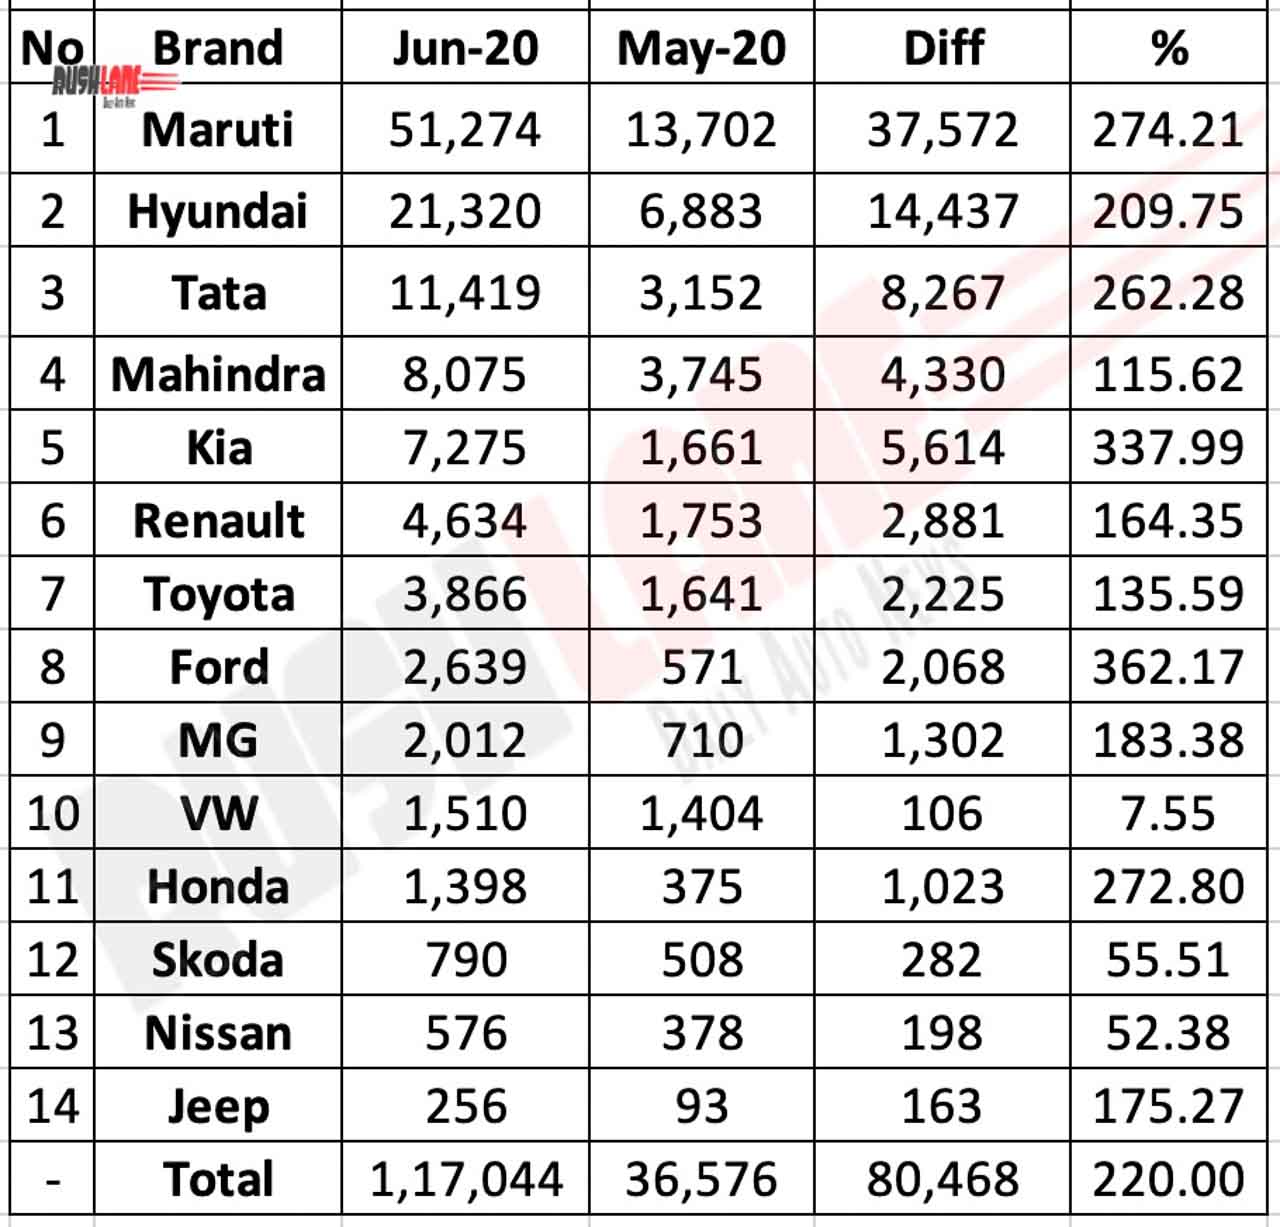 Car Sales June 2020 vs May 2020